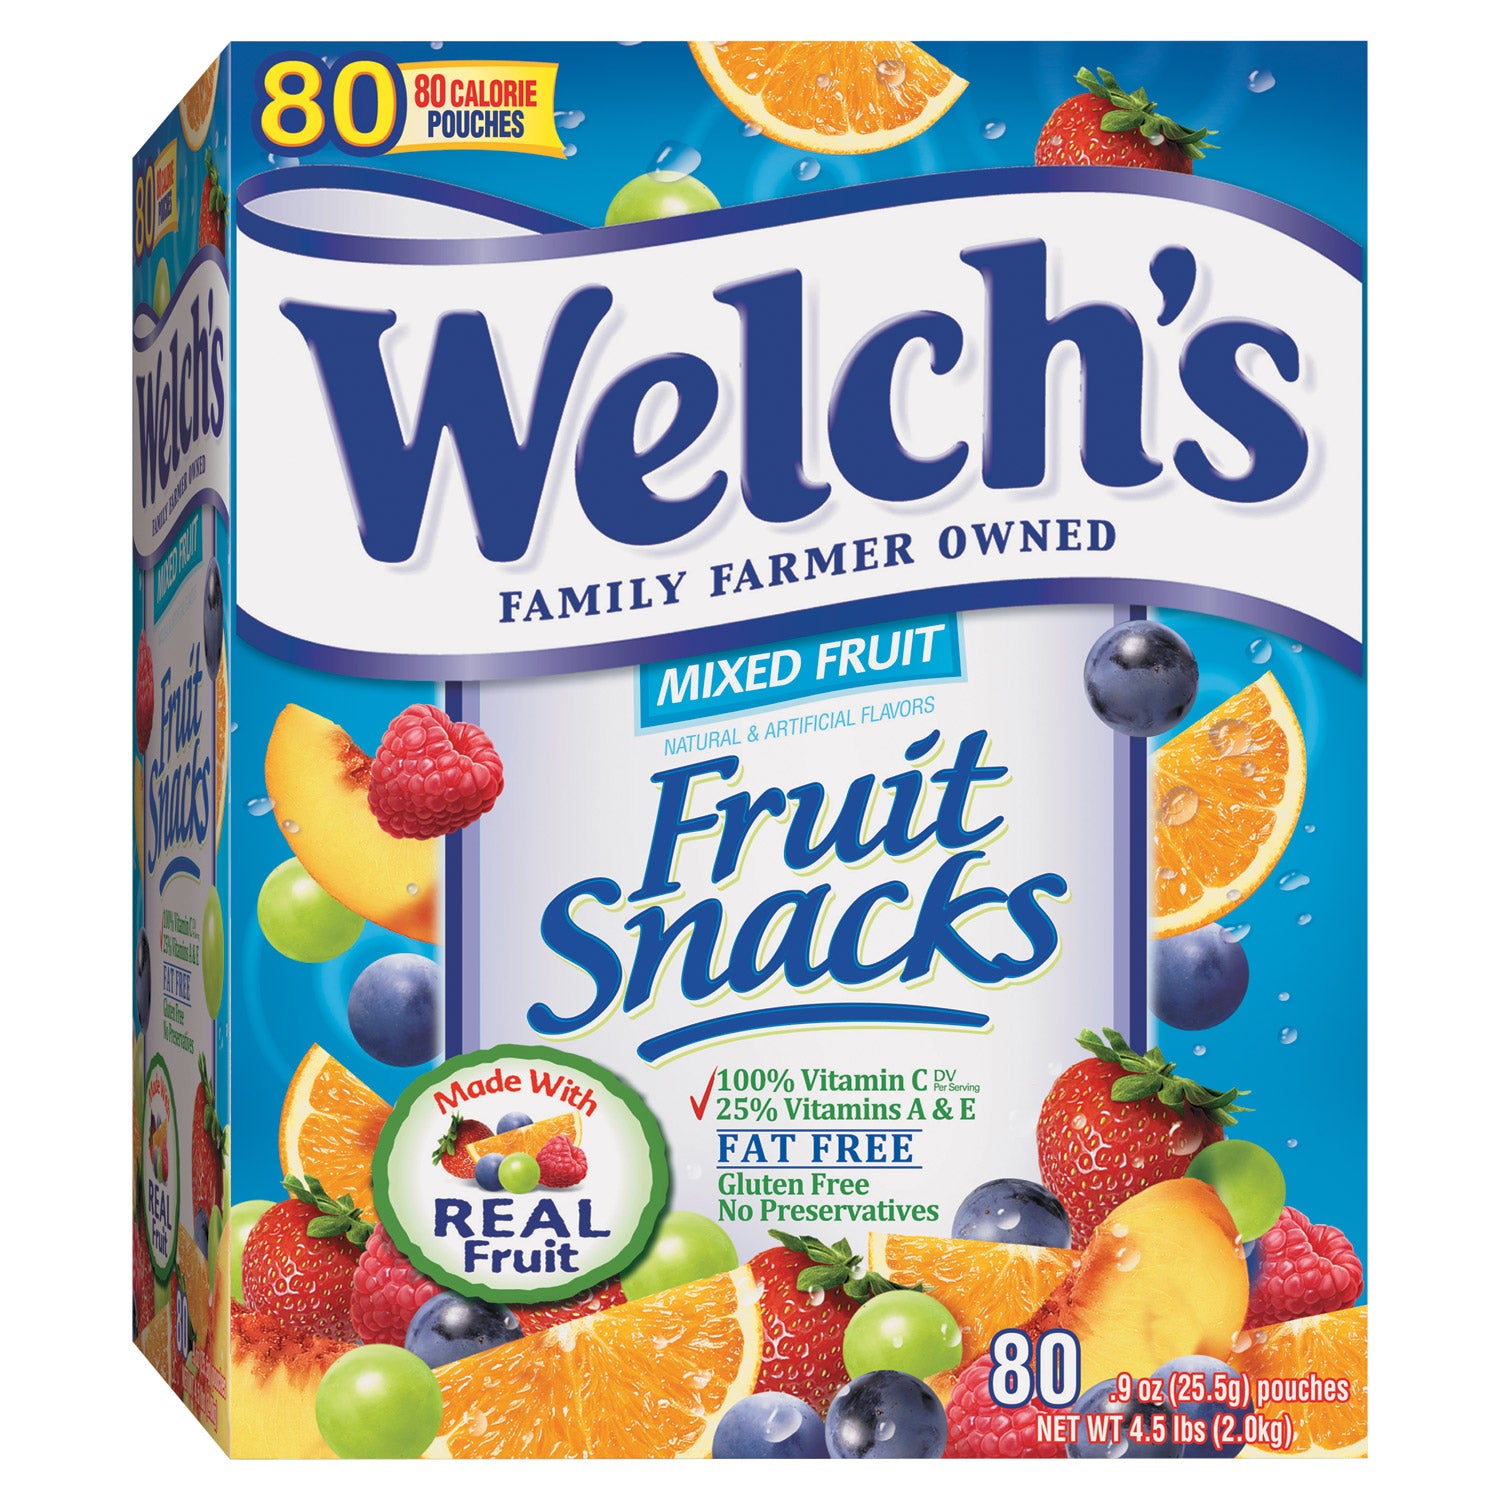 Welchs Frugt Snacks Blandet Frugt 0,9 oz, 80-tæller